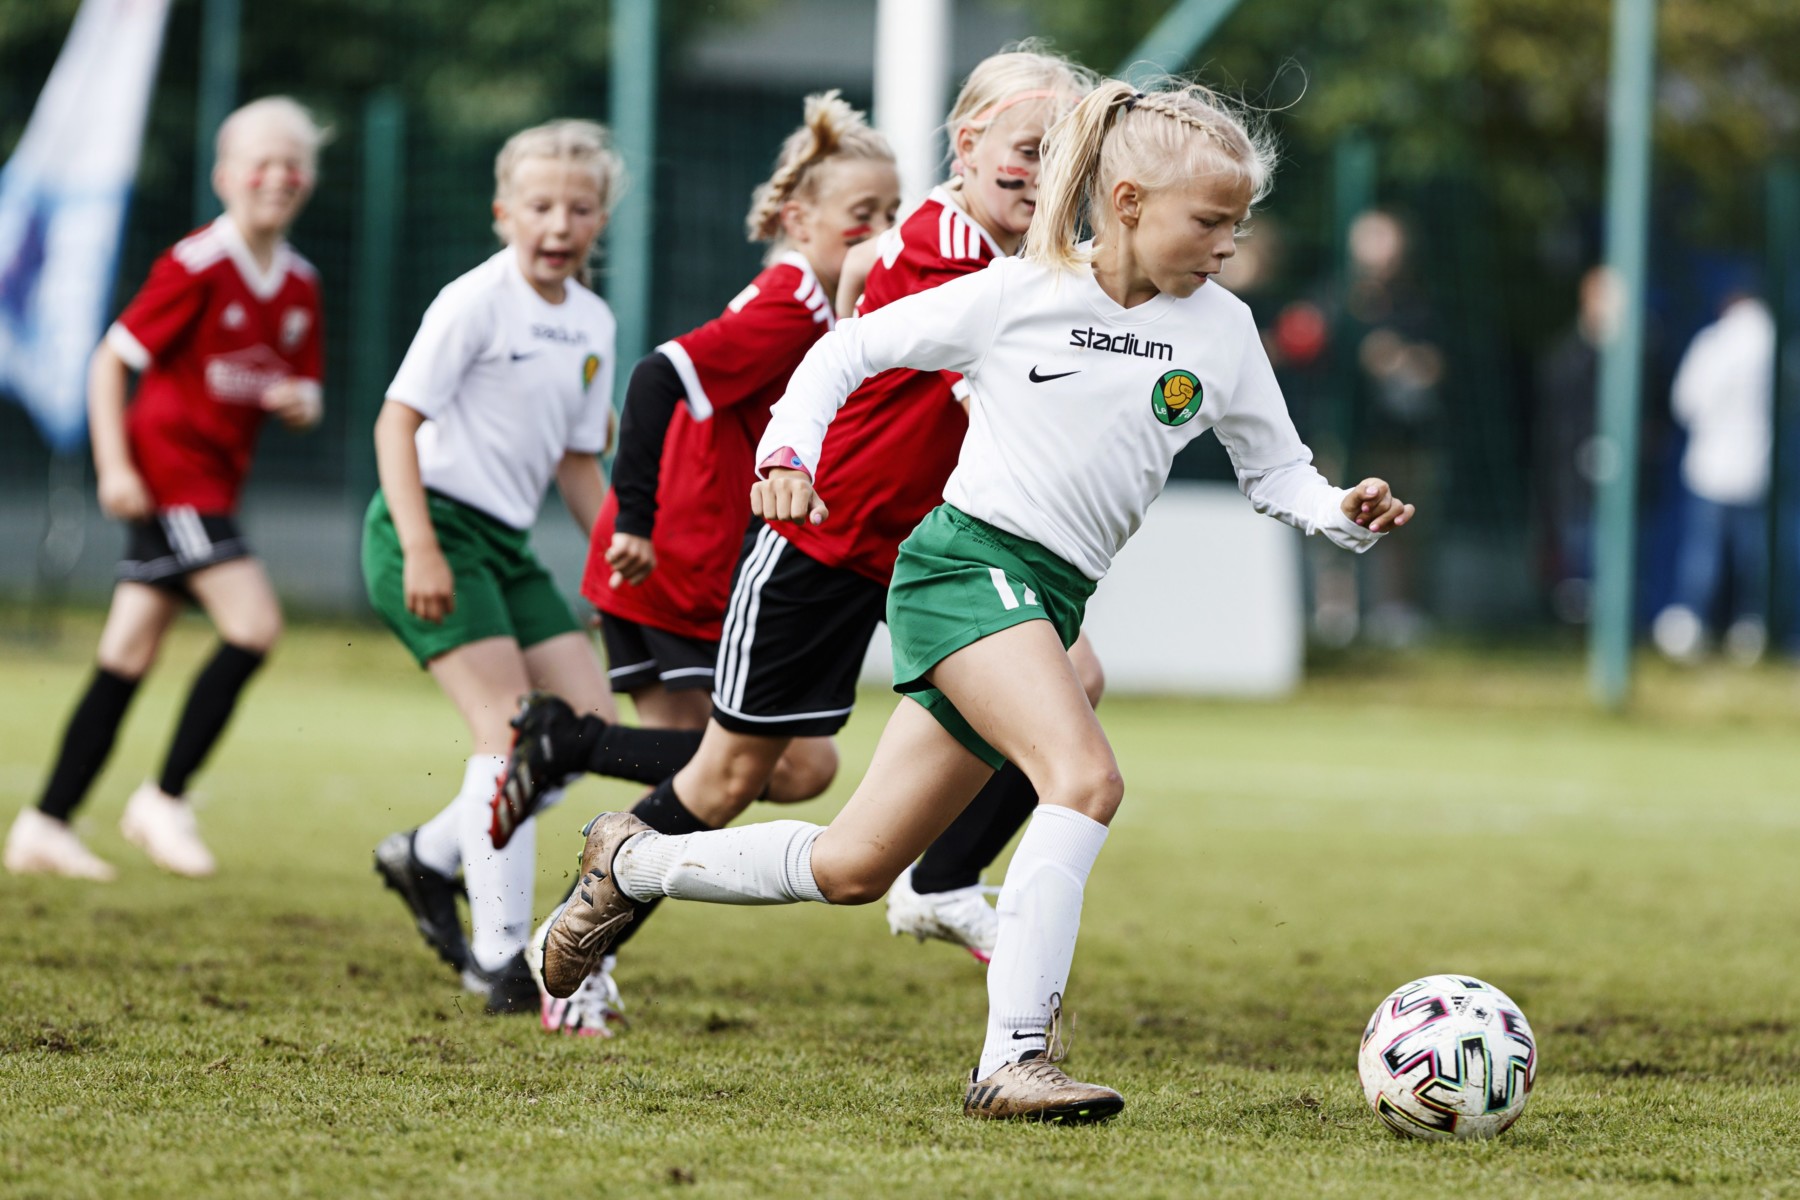 Una jugadora de fútbol sobrepasa a otras chicas regateándoles el balón.